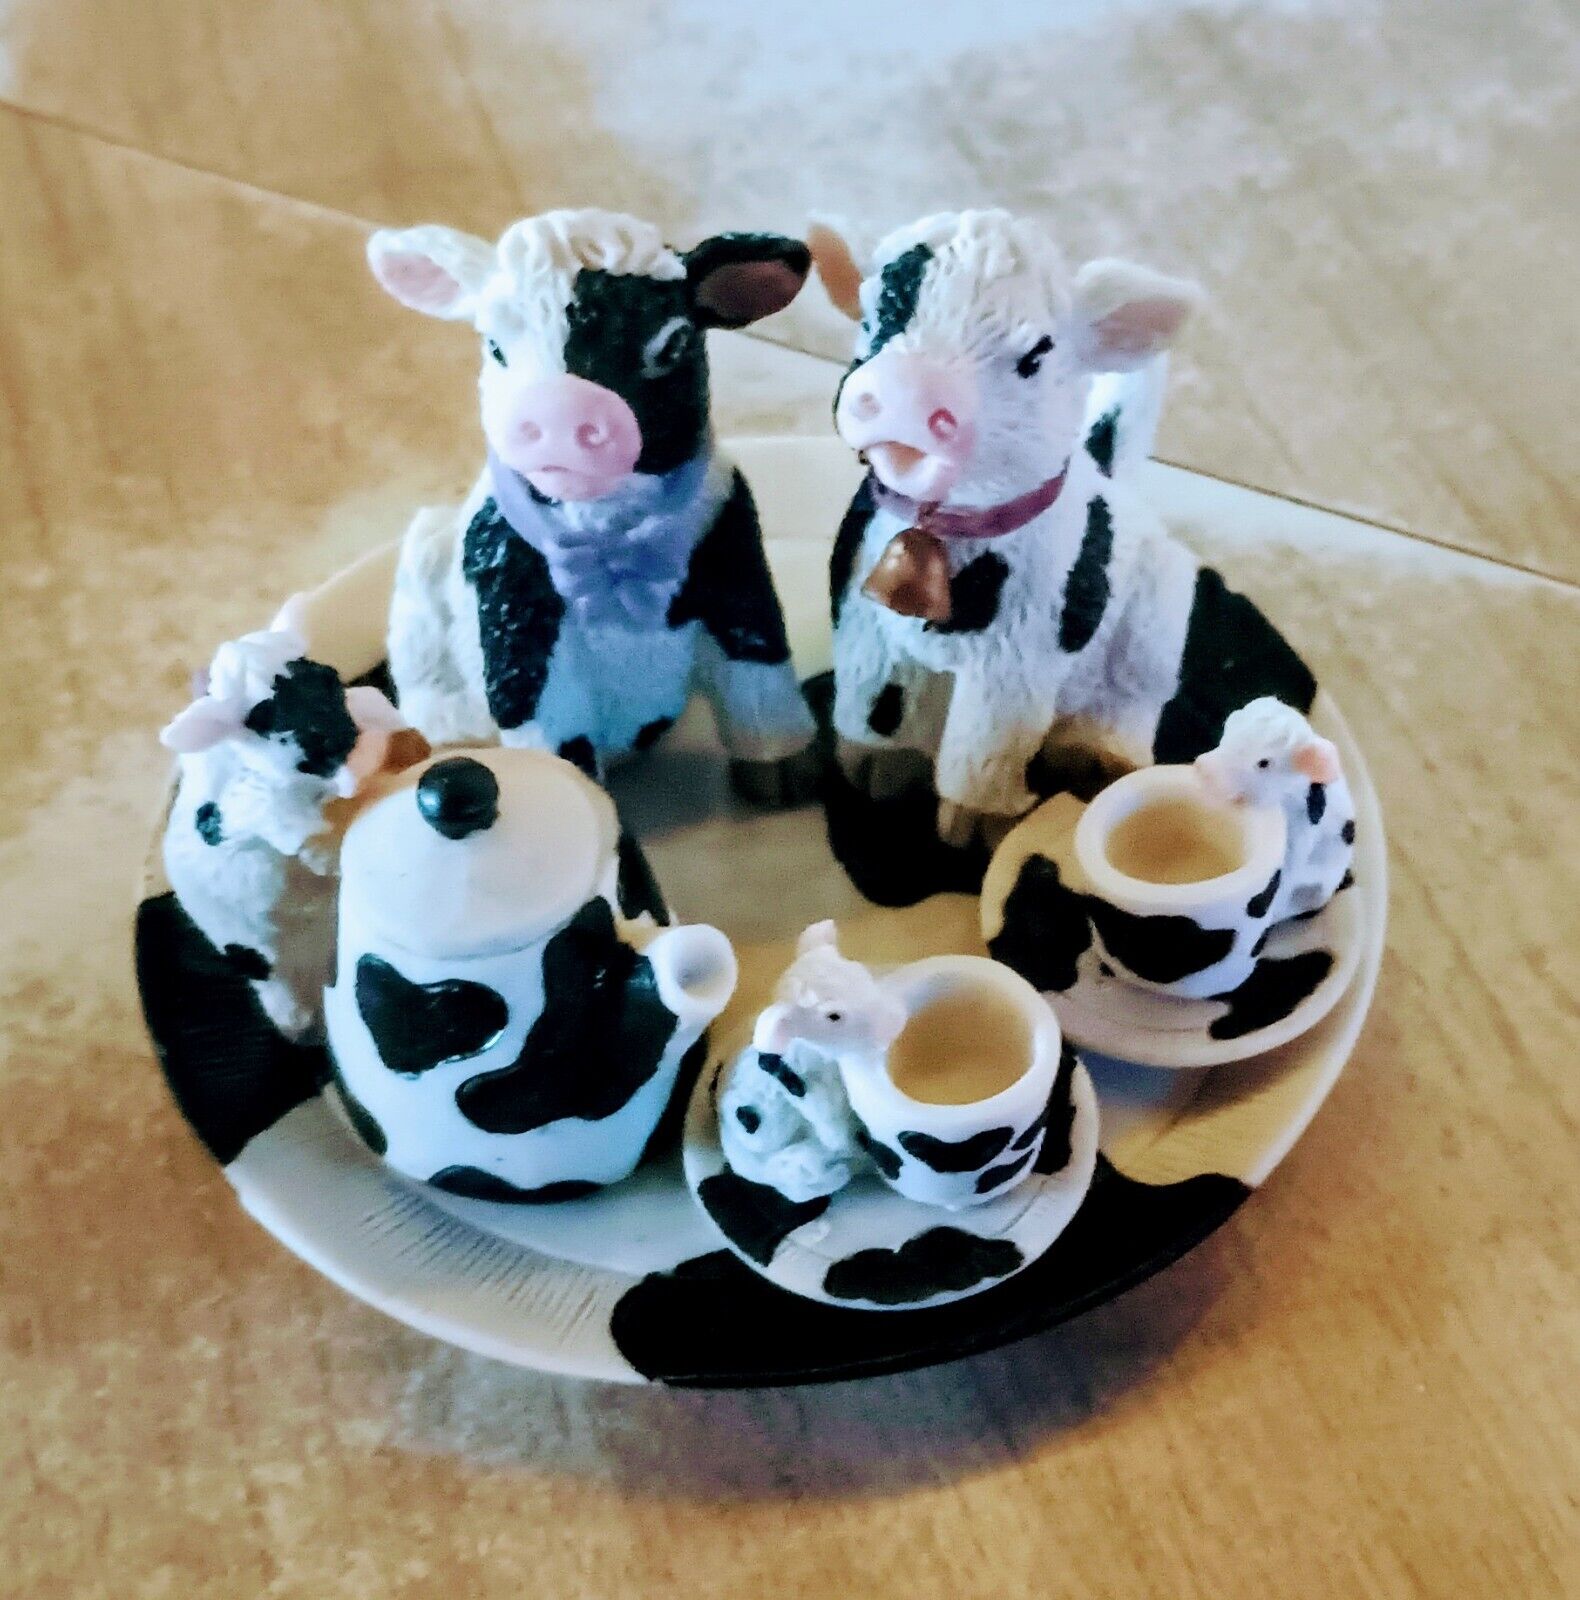 Miniature Tea Set - Cow Family - Cracker Barrel 